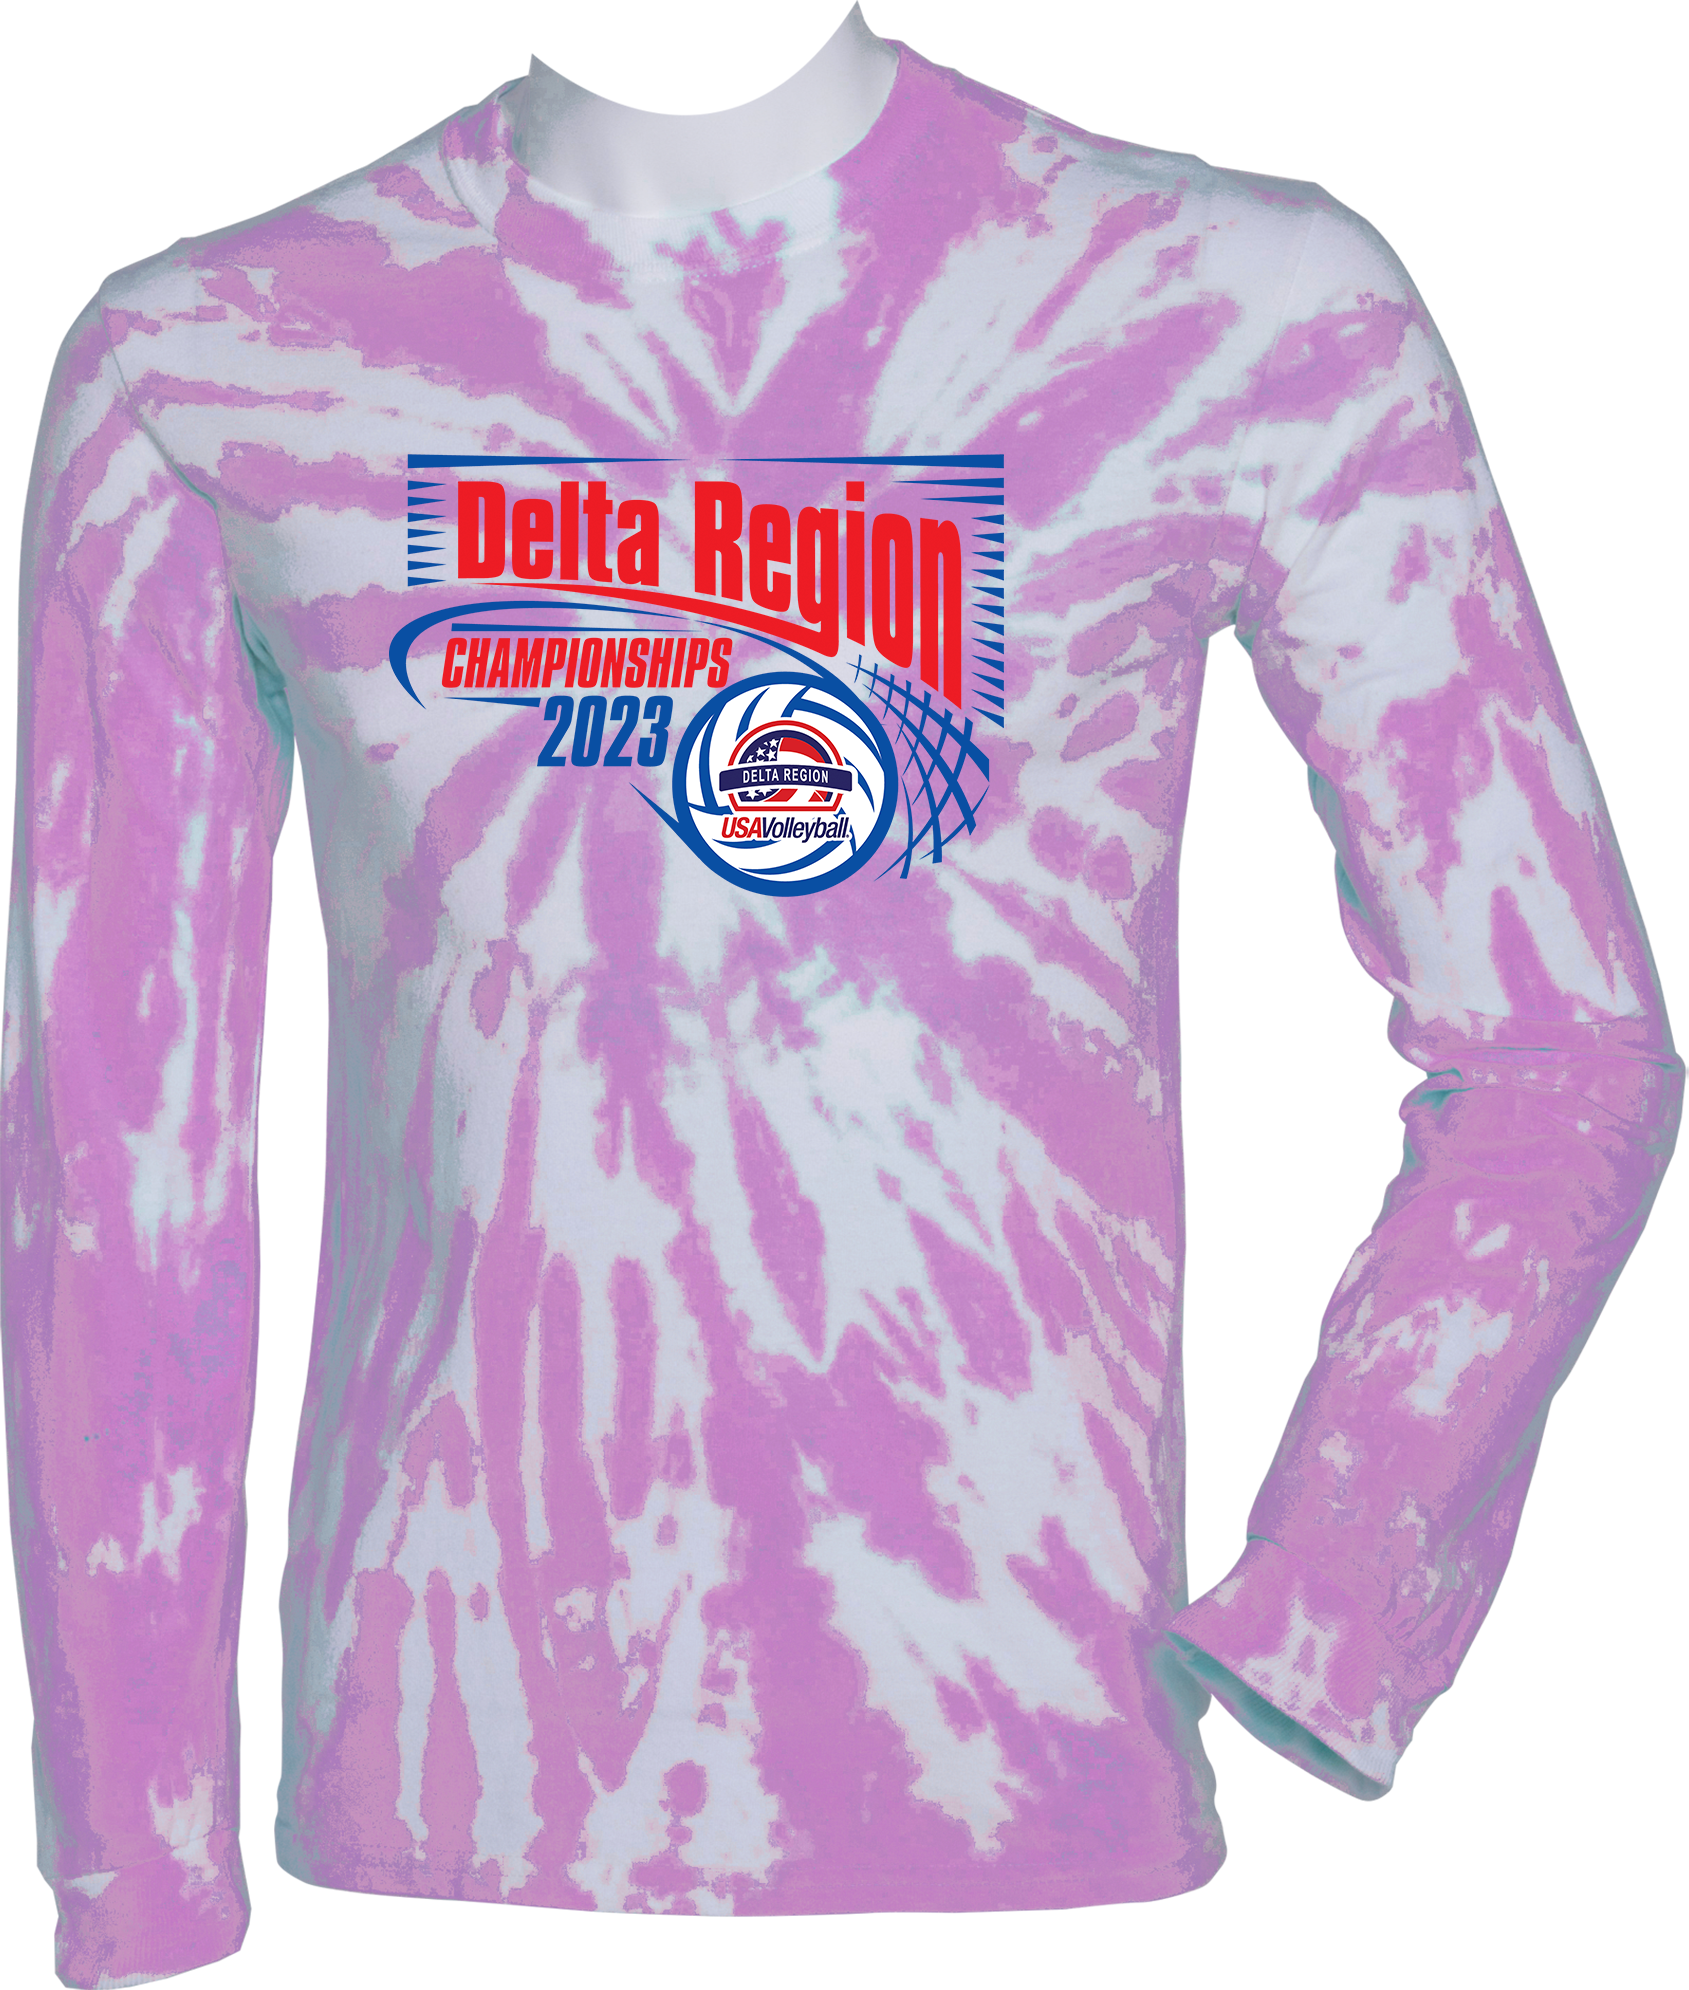 TIE-DYE LONG SLEEVES - 2023 Delta Region Championships